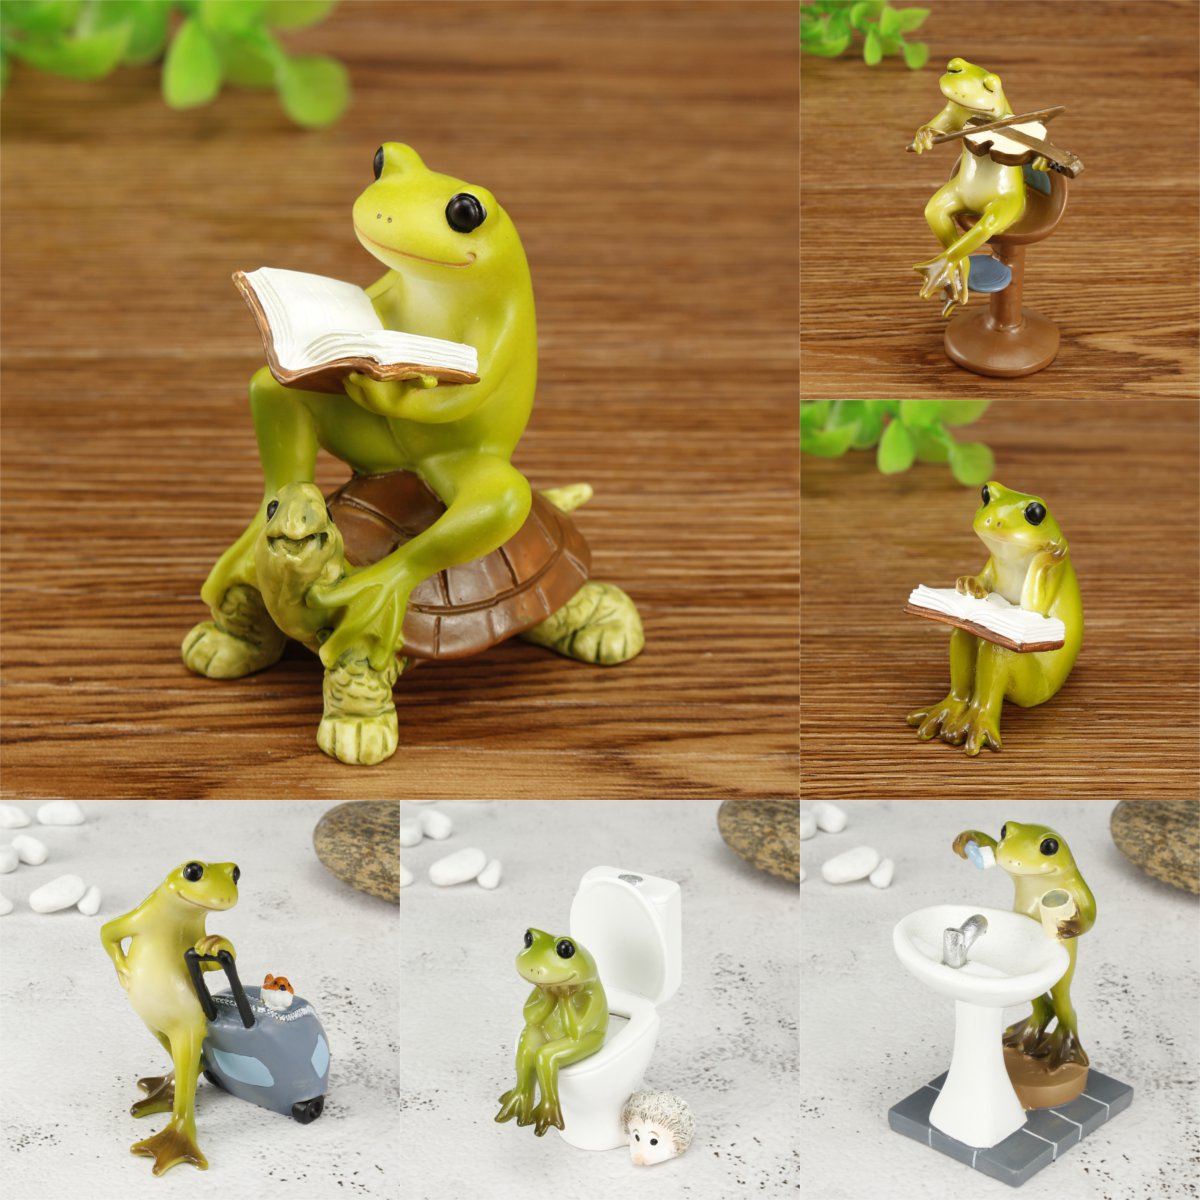 Cute-Frog-Statue-Figurine-Home-Office-Desk-Ornament-Garden-Bonsai-Decor-Gift-1704537-1